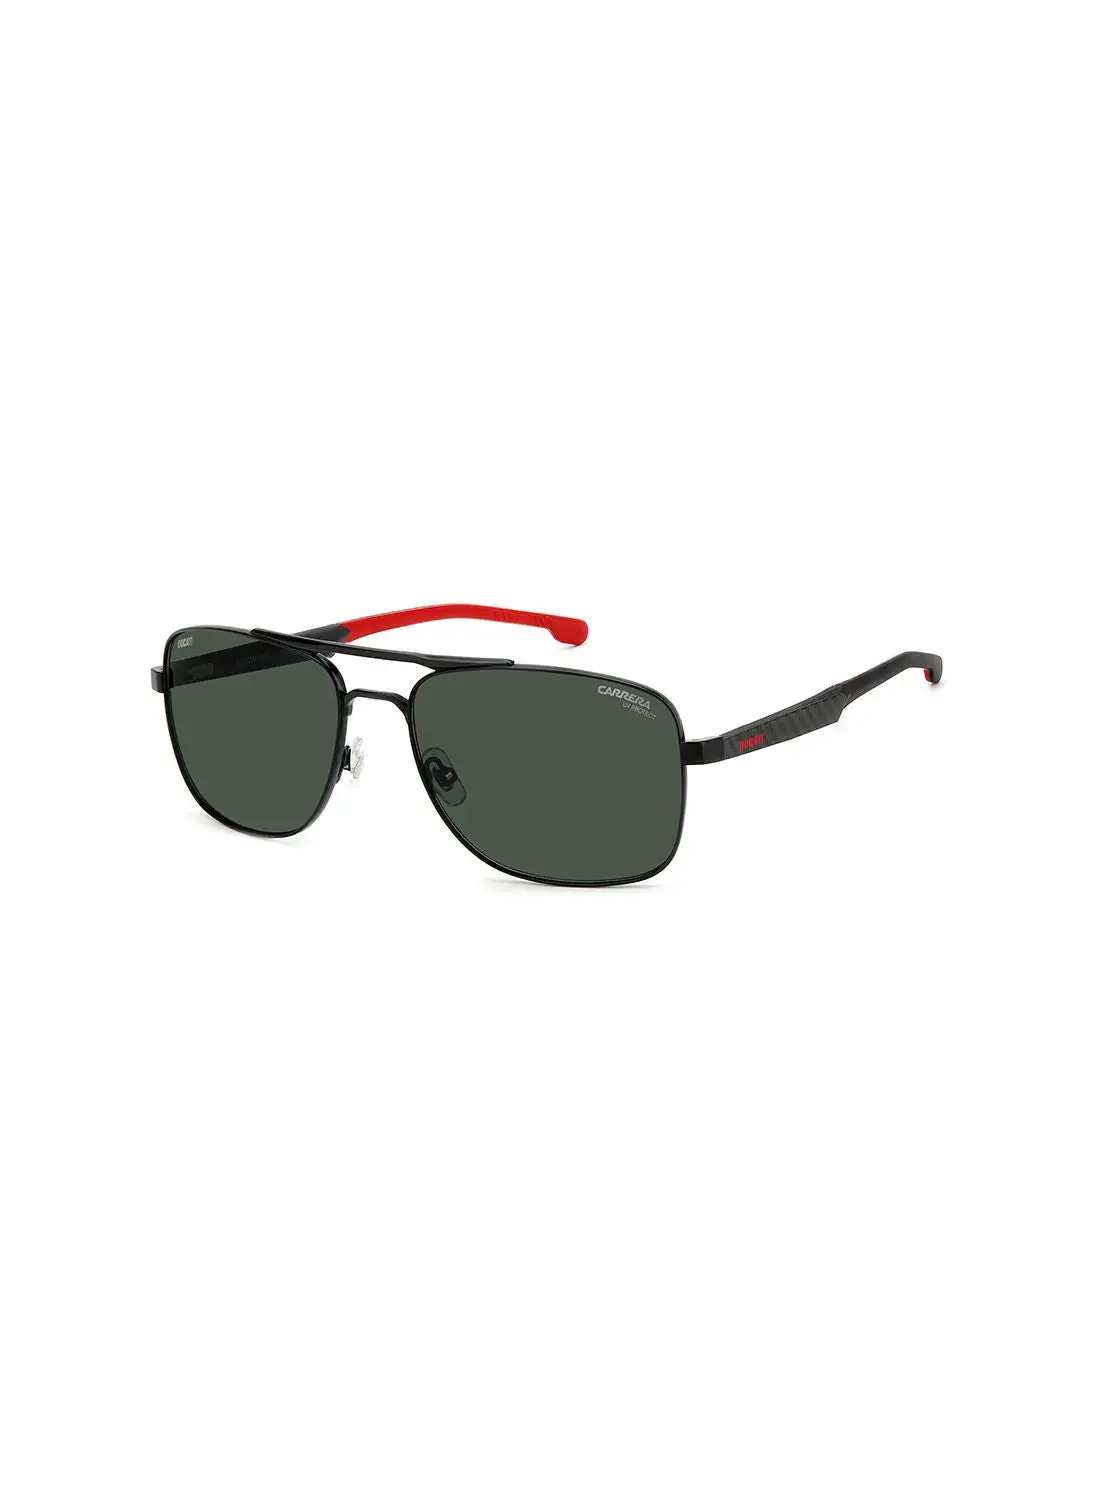 نظارة كاريرا للرجال للحماية من الأشعة فوق البنفسجية - Carduc 022/S أسود أحمر 60 - مقاس العدسة: 60 ملم